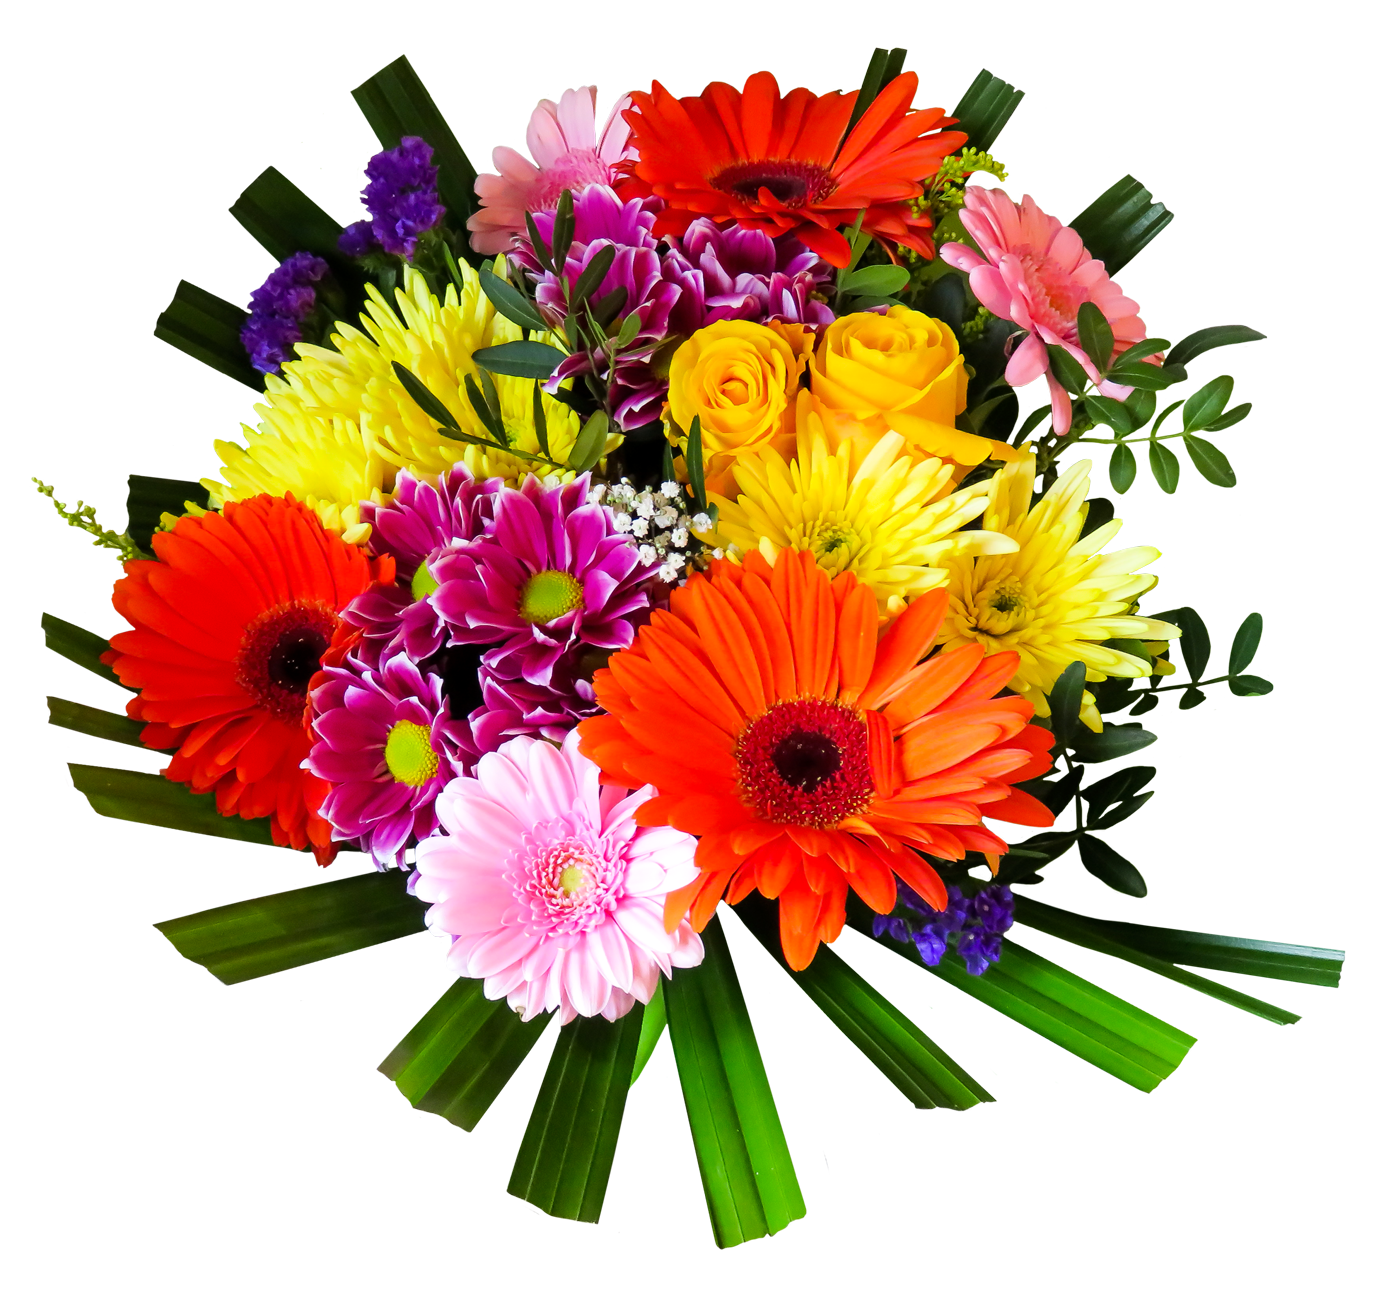 Image de fleurs PNG avec fond Transparent